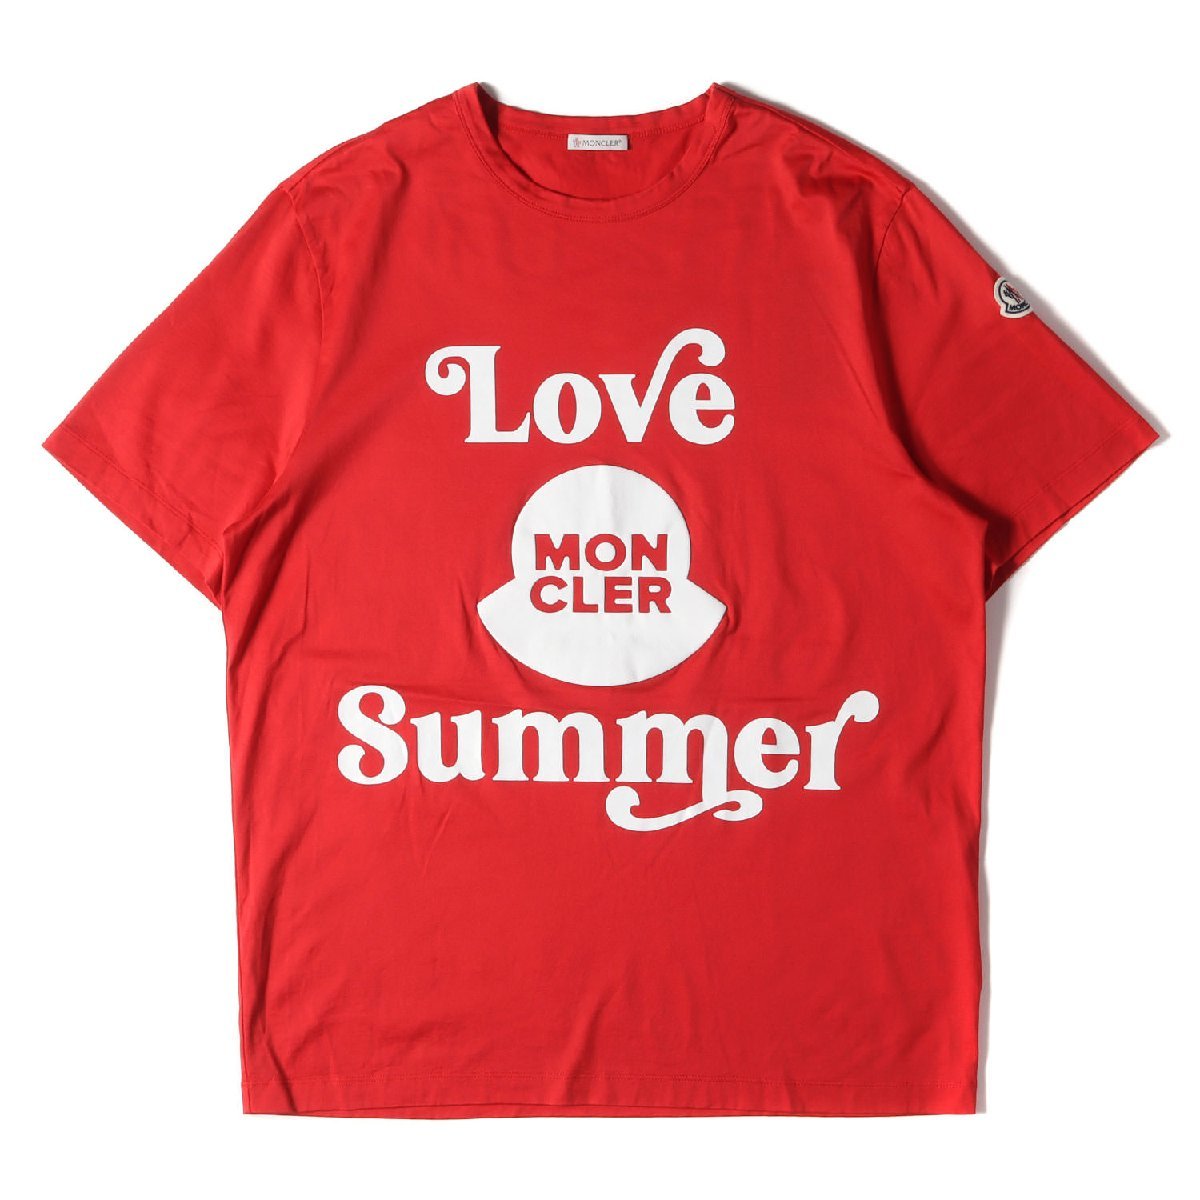 注目ショップ・ブランドのギフト Summer Love 21SS サイズ:L Tシャツ